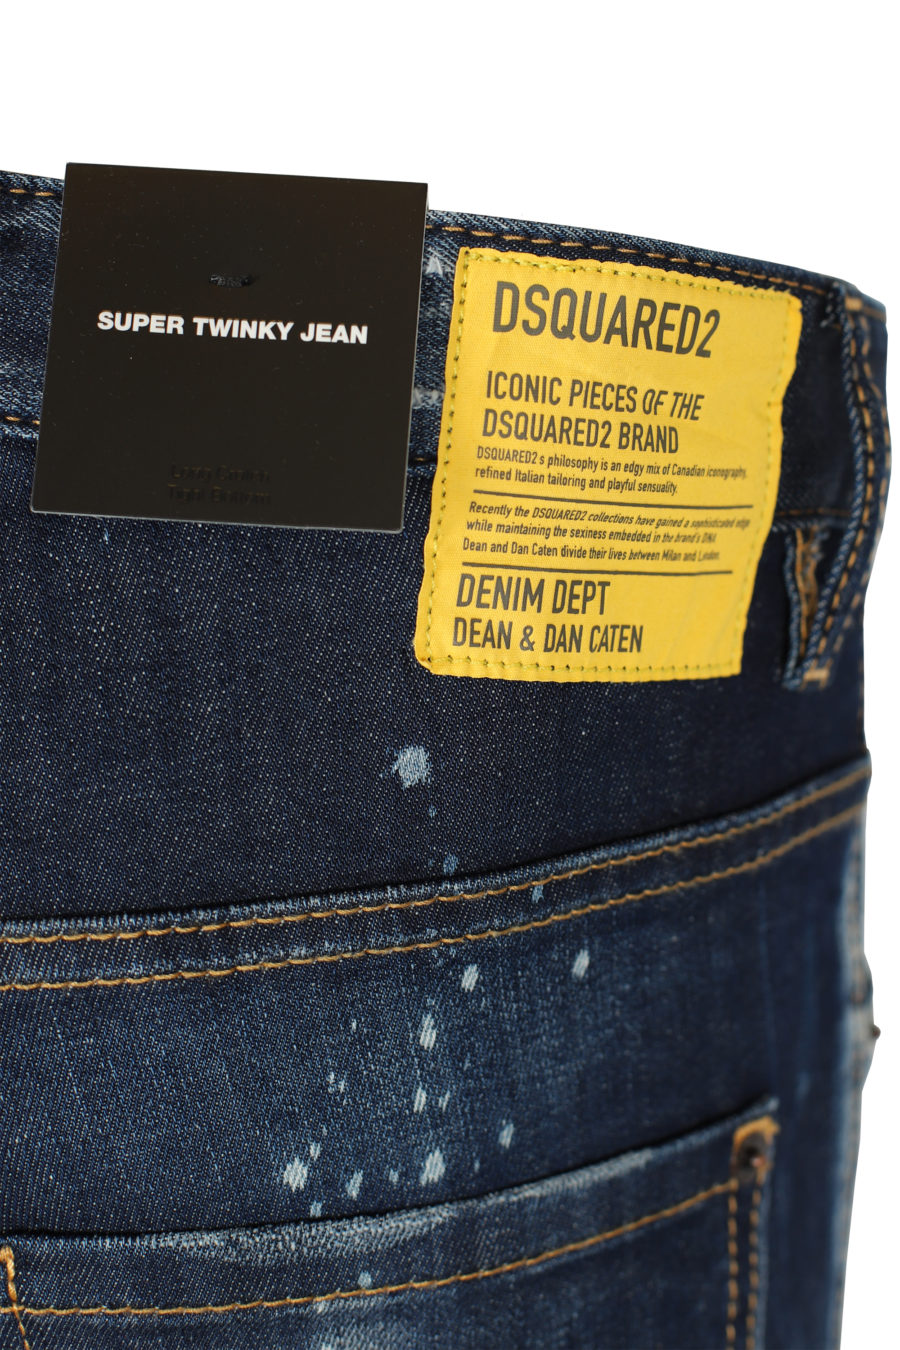 Pantalón vaquero "Super twinky jean" de color azul oscuro - IMG 2641